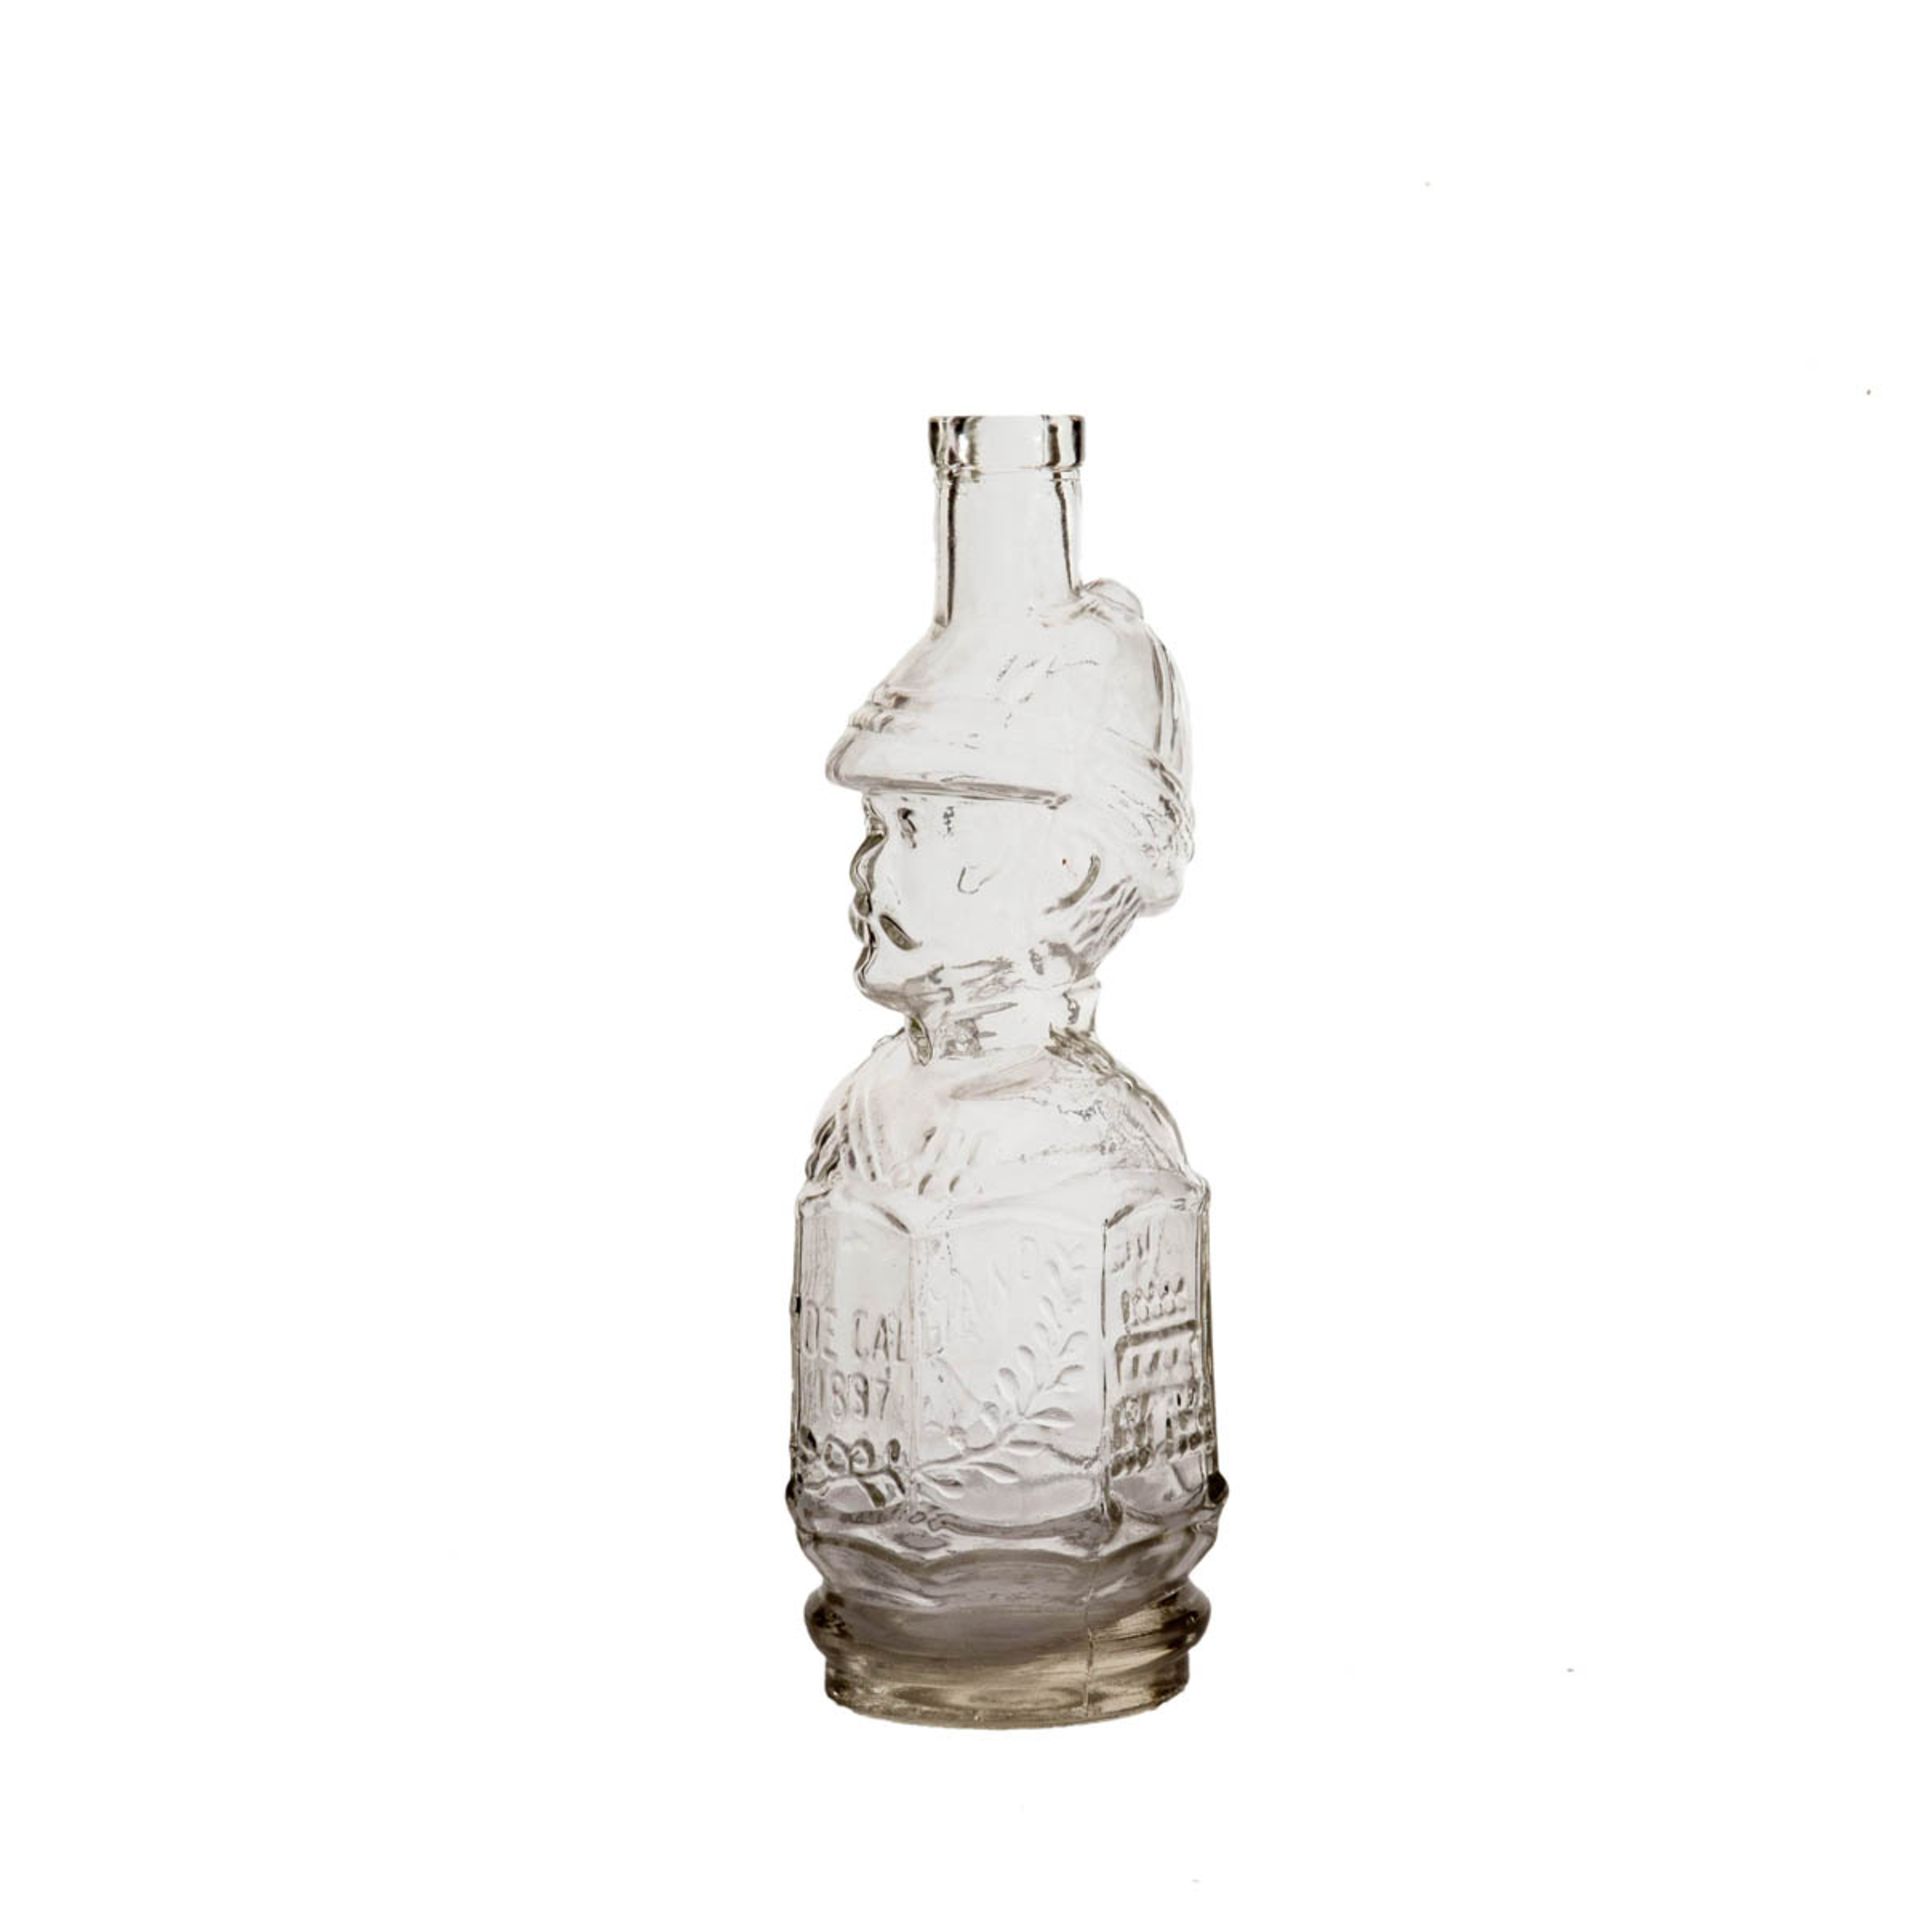 Scherzflasche, Italien Farbloses Glas in die Form gegeben. Runder Stand, Korpus mit Inschrift "